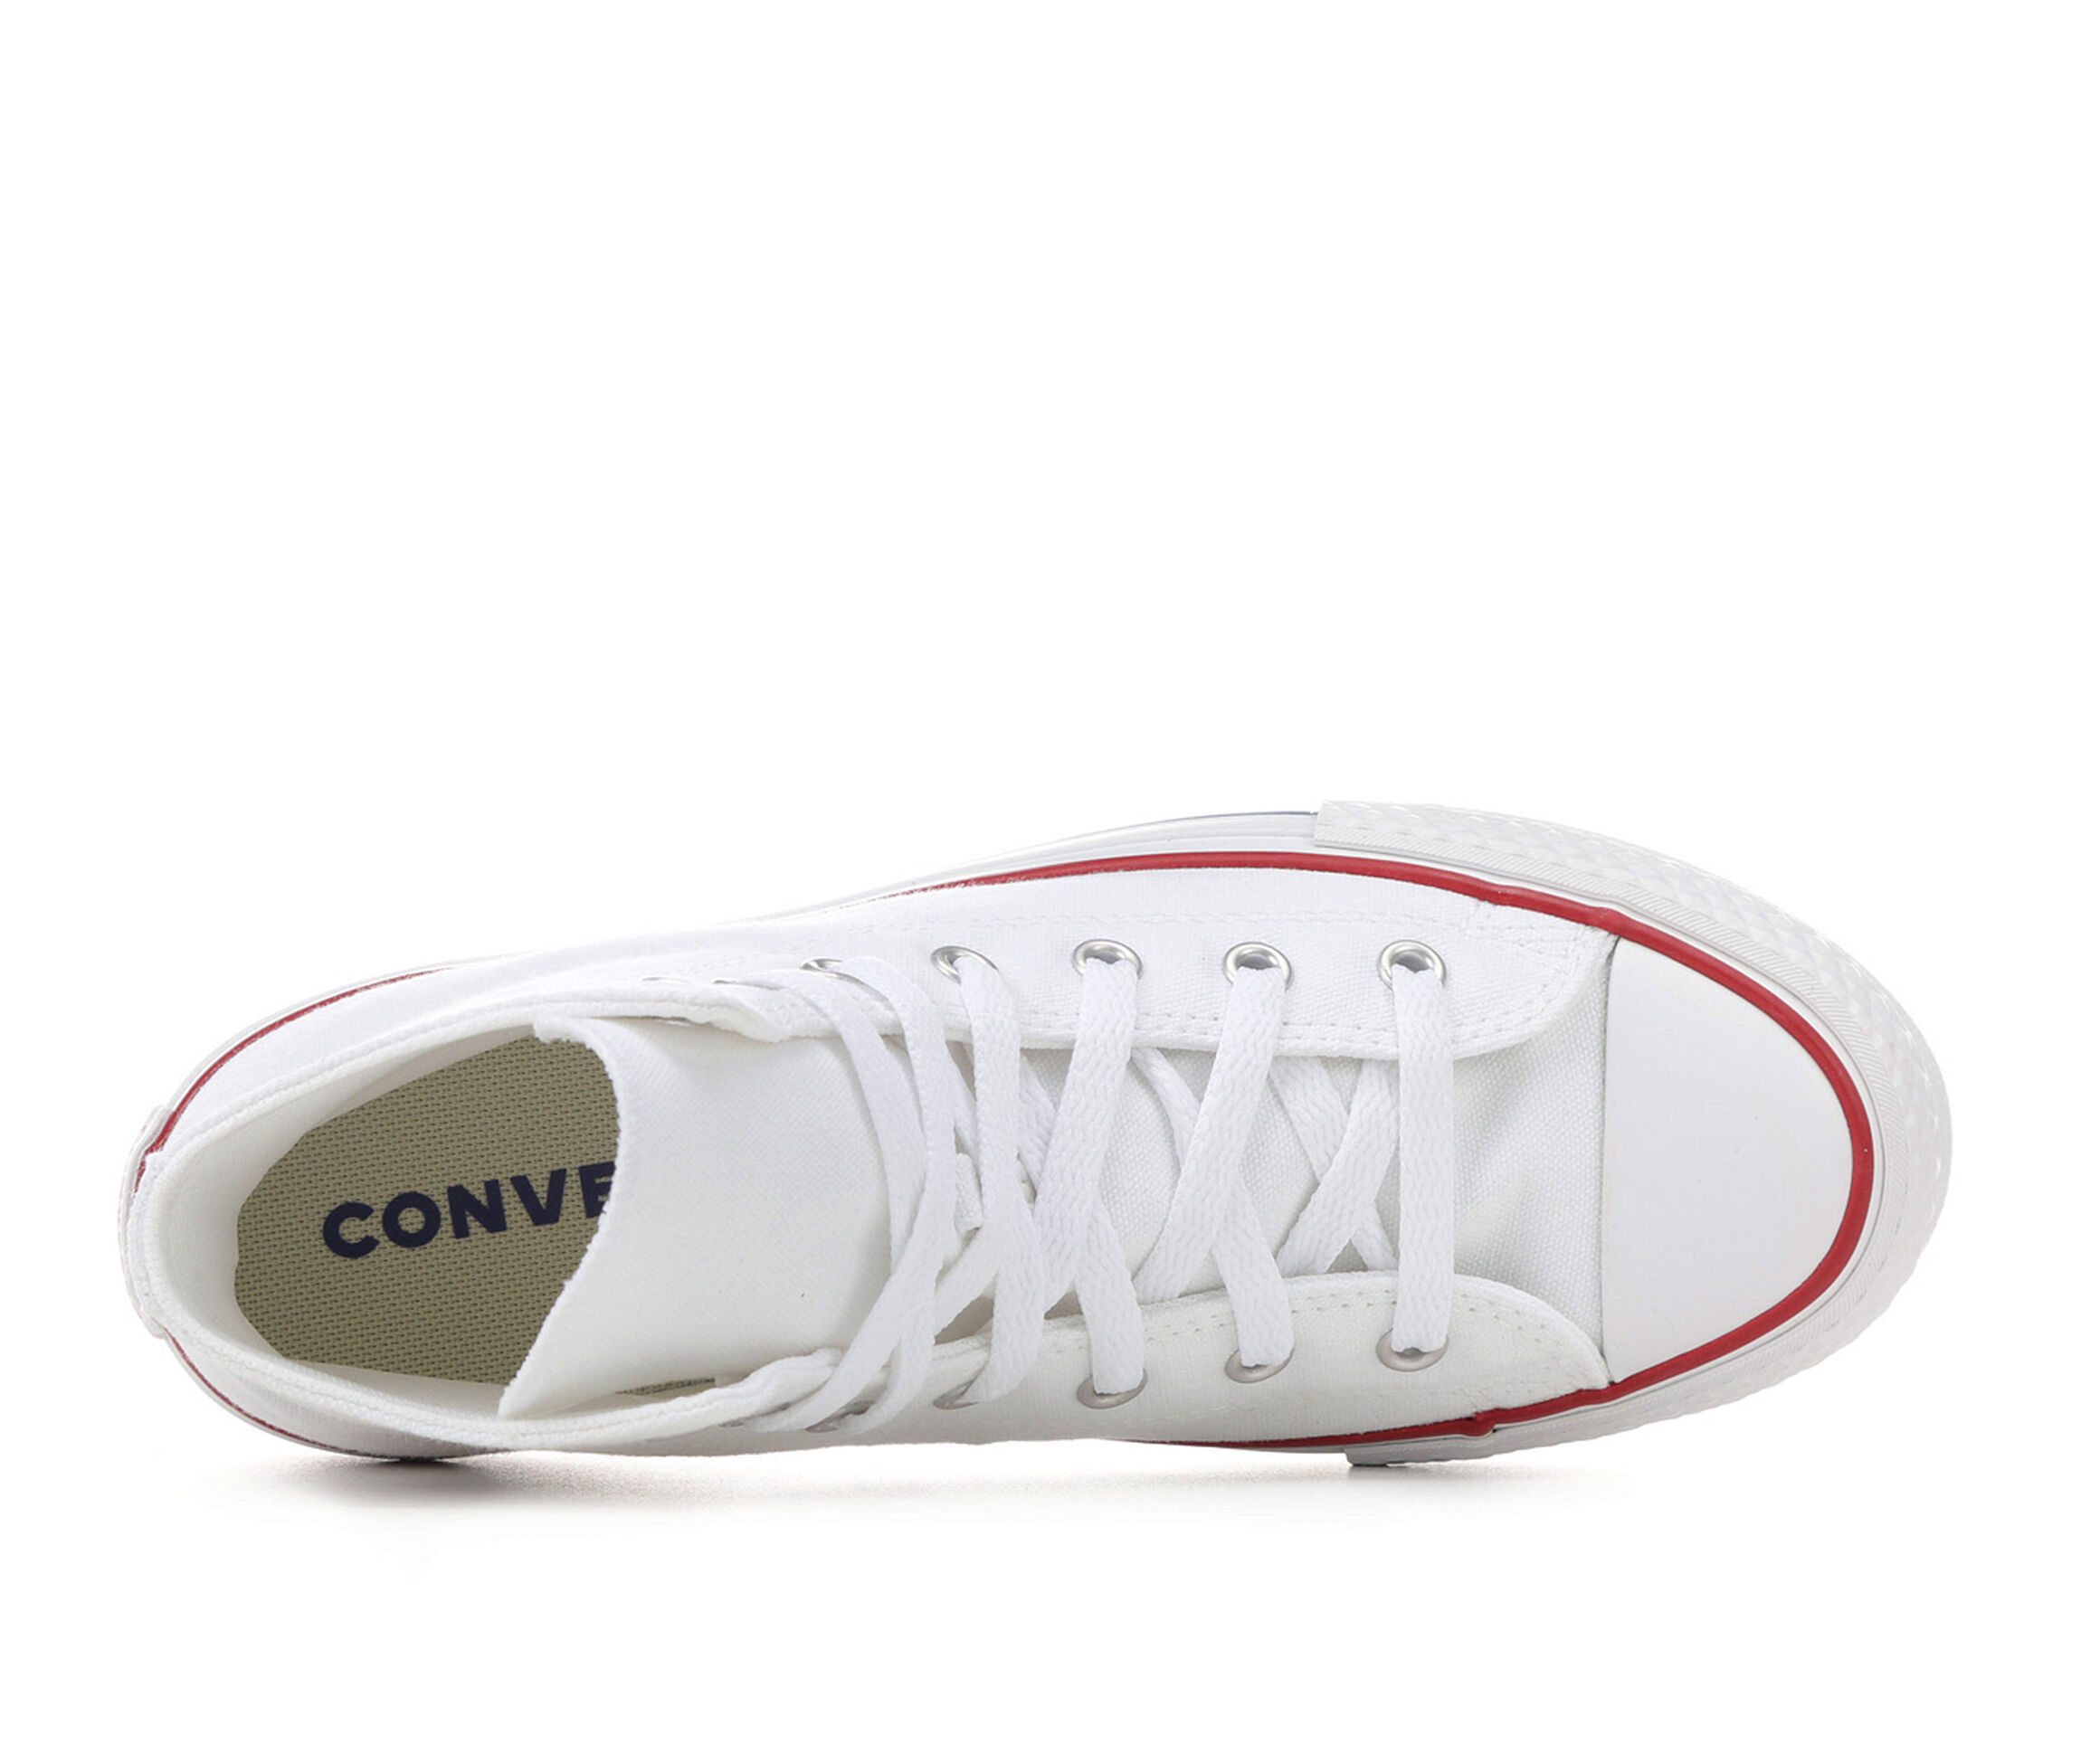 Converse Shoes | Shoe Carnival